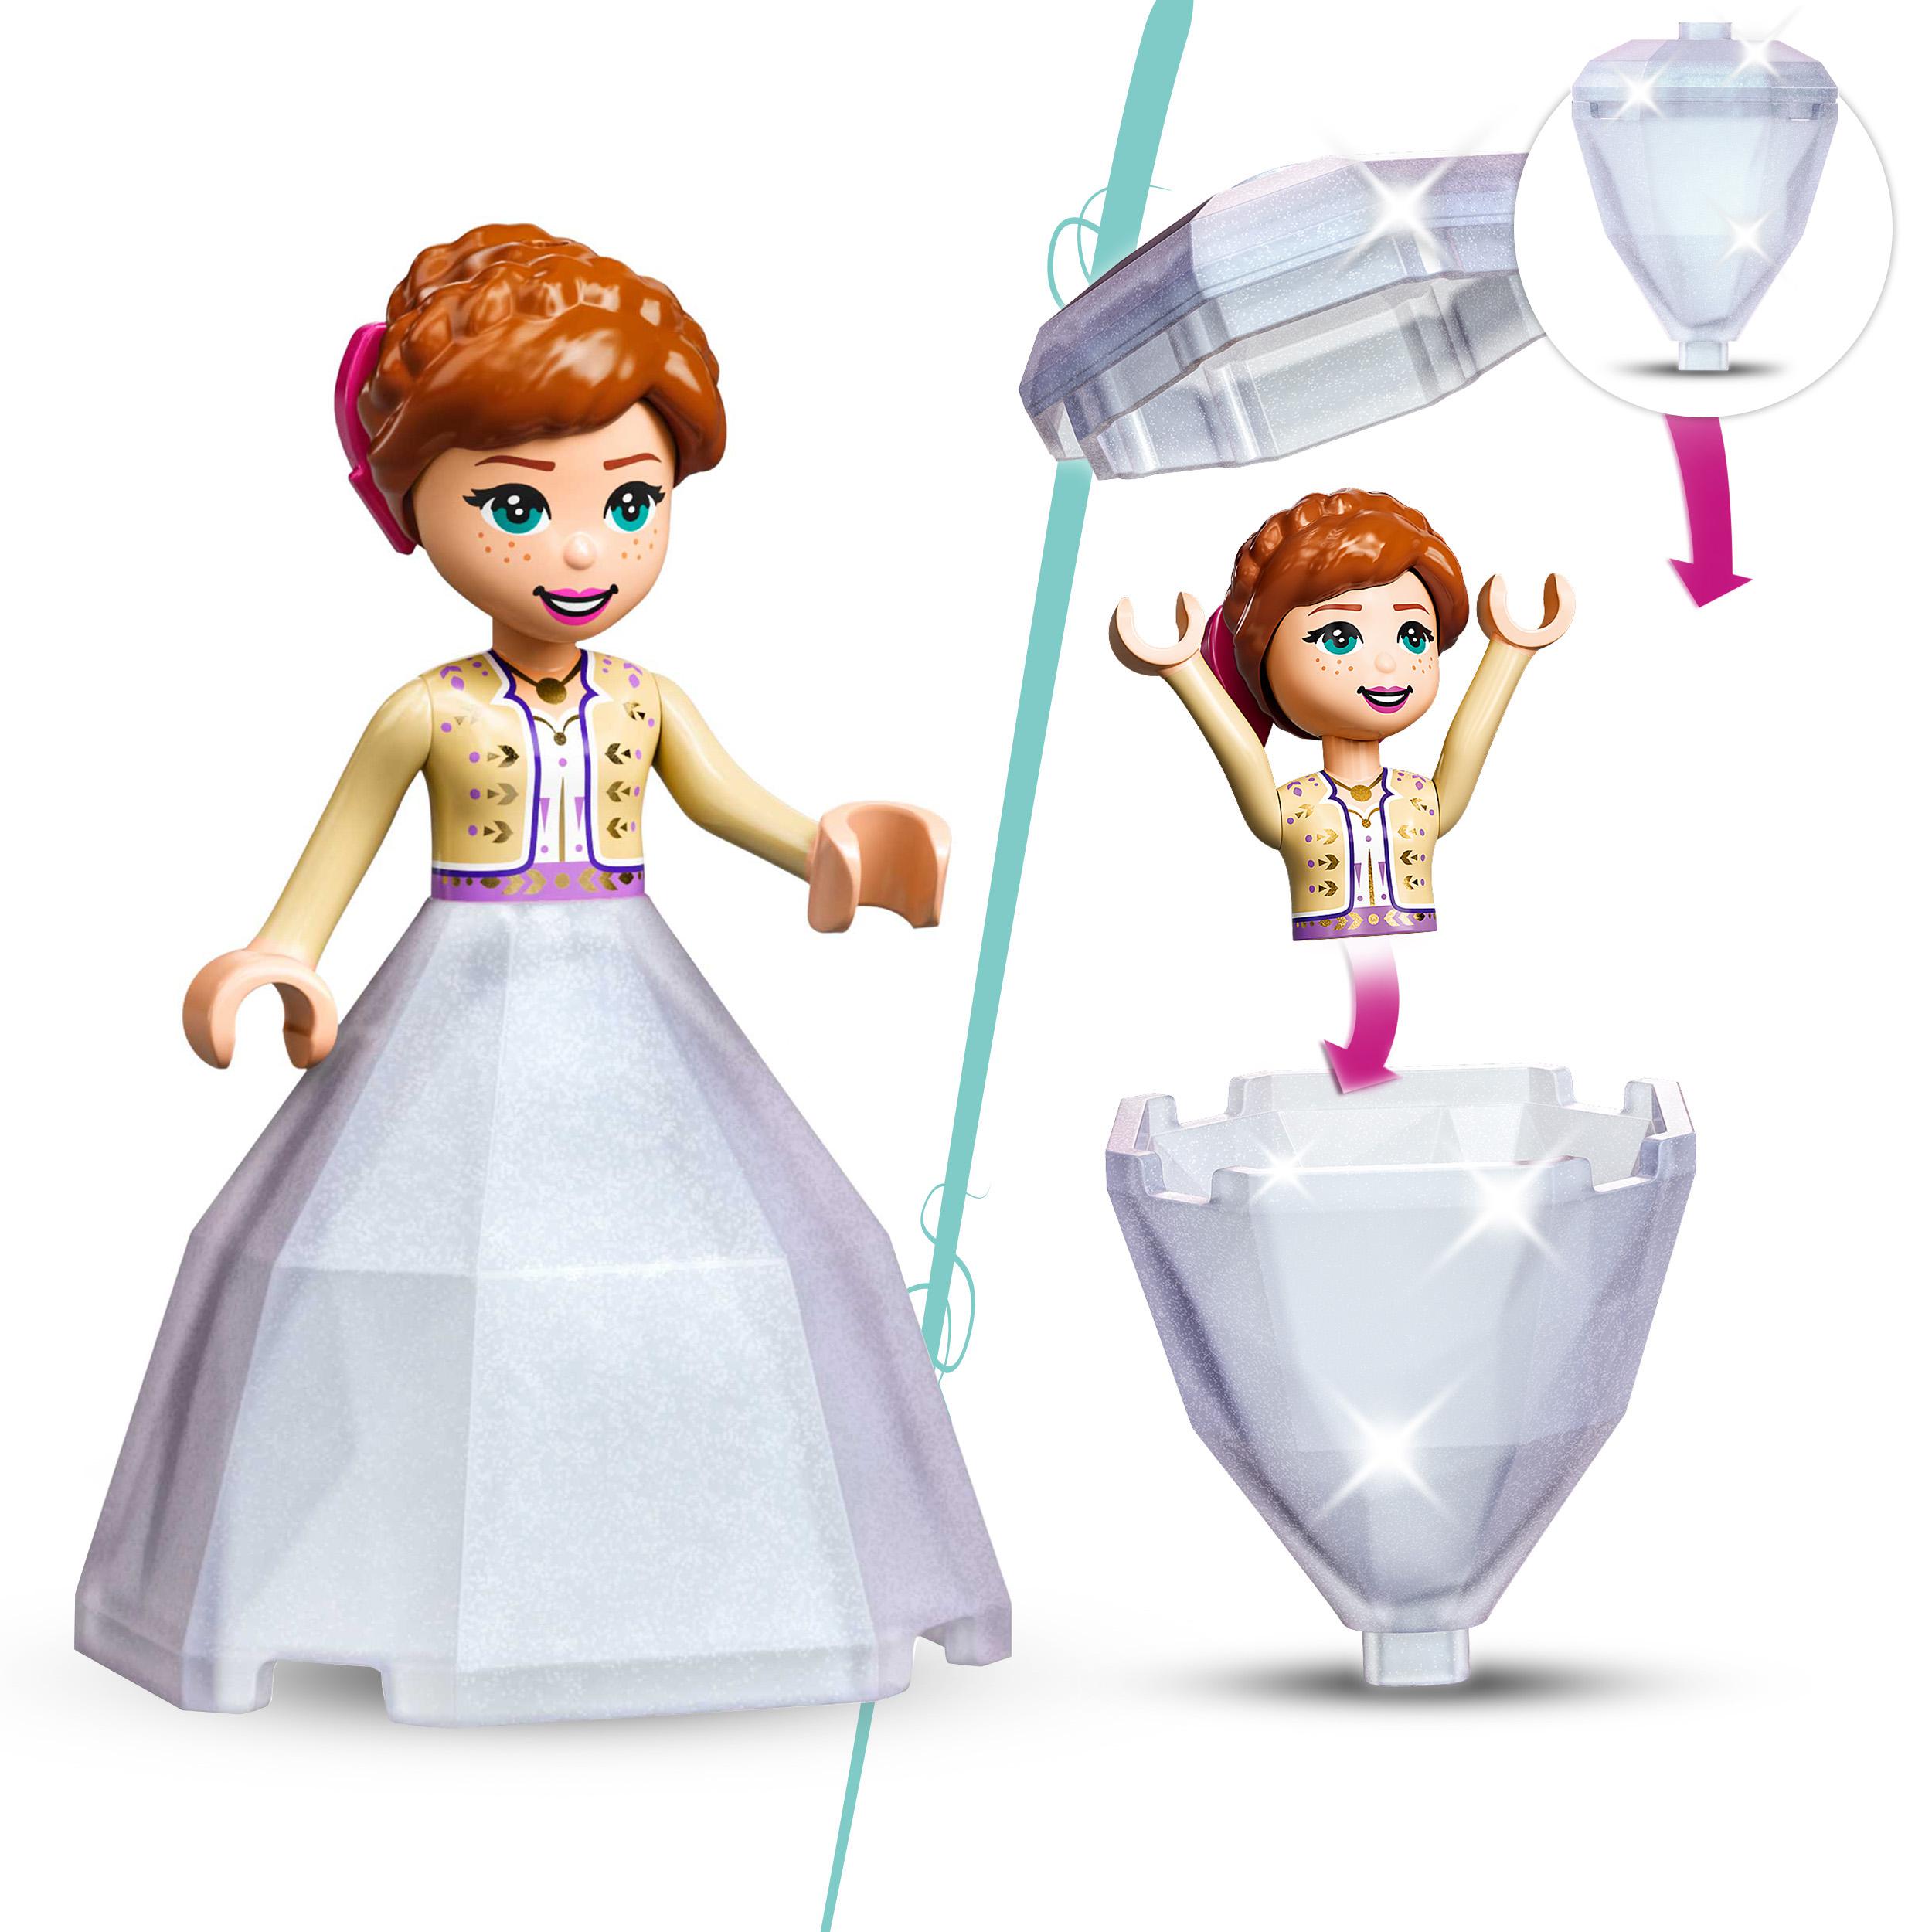 LEGO Disney Il Cortile del Castello di Anna, Giocattolo con Principessa Frozen 2 43198, , large